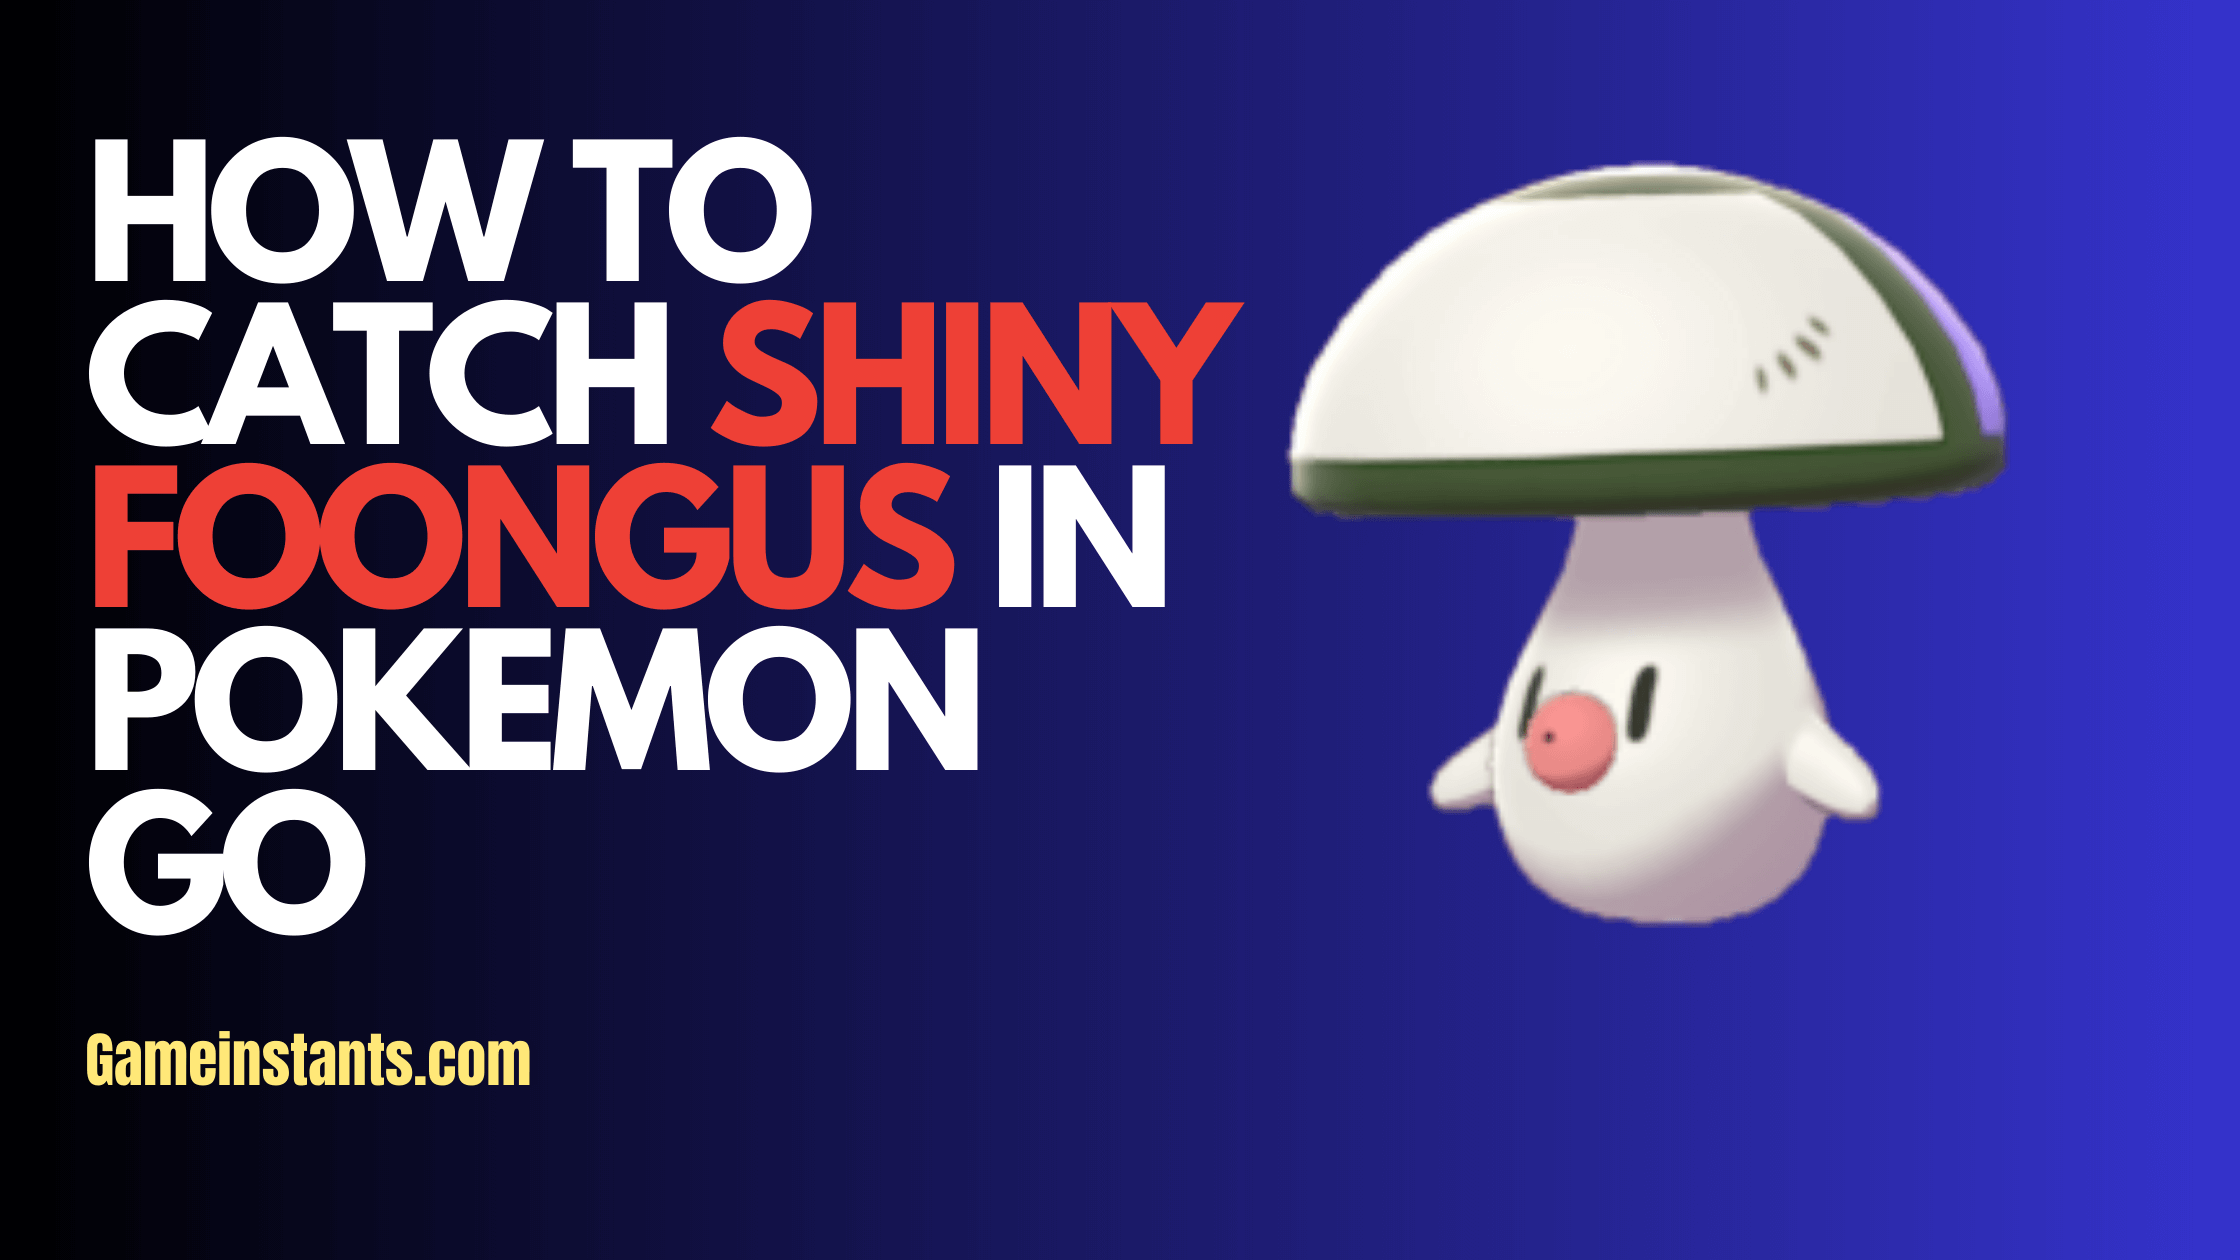 Shiny Foongus Pokemon Go